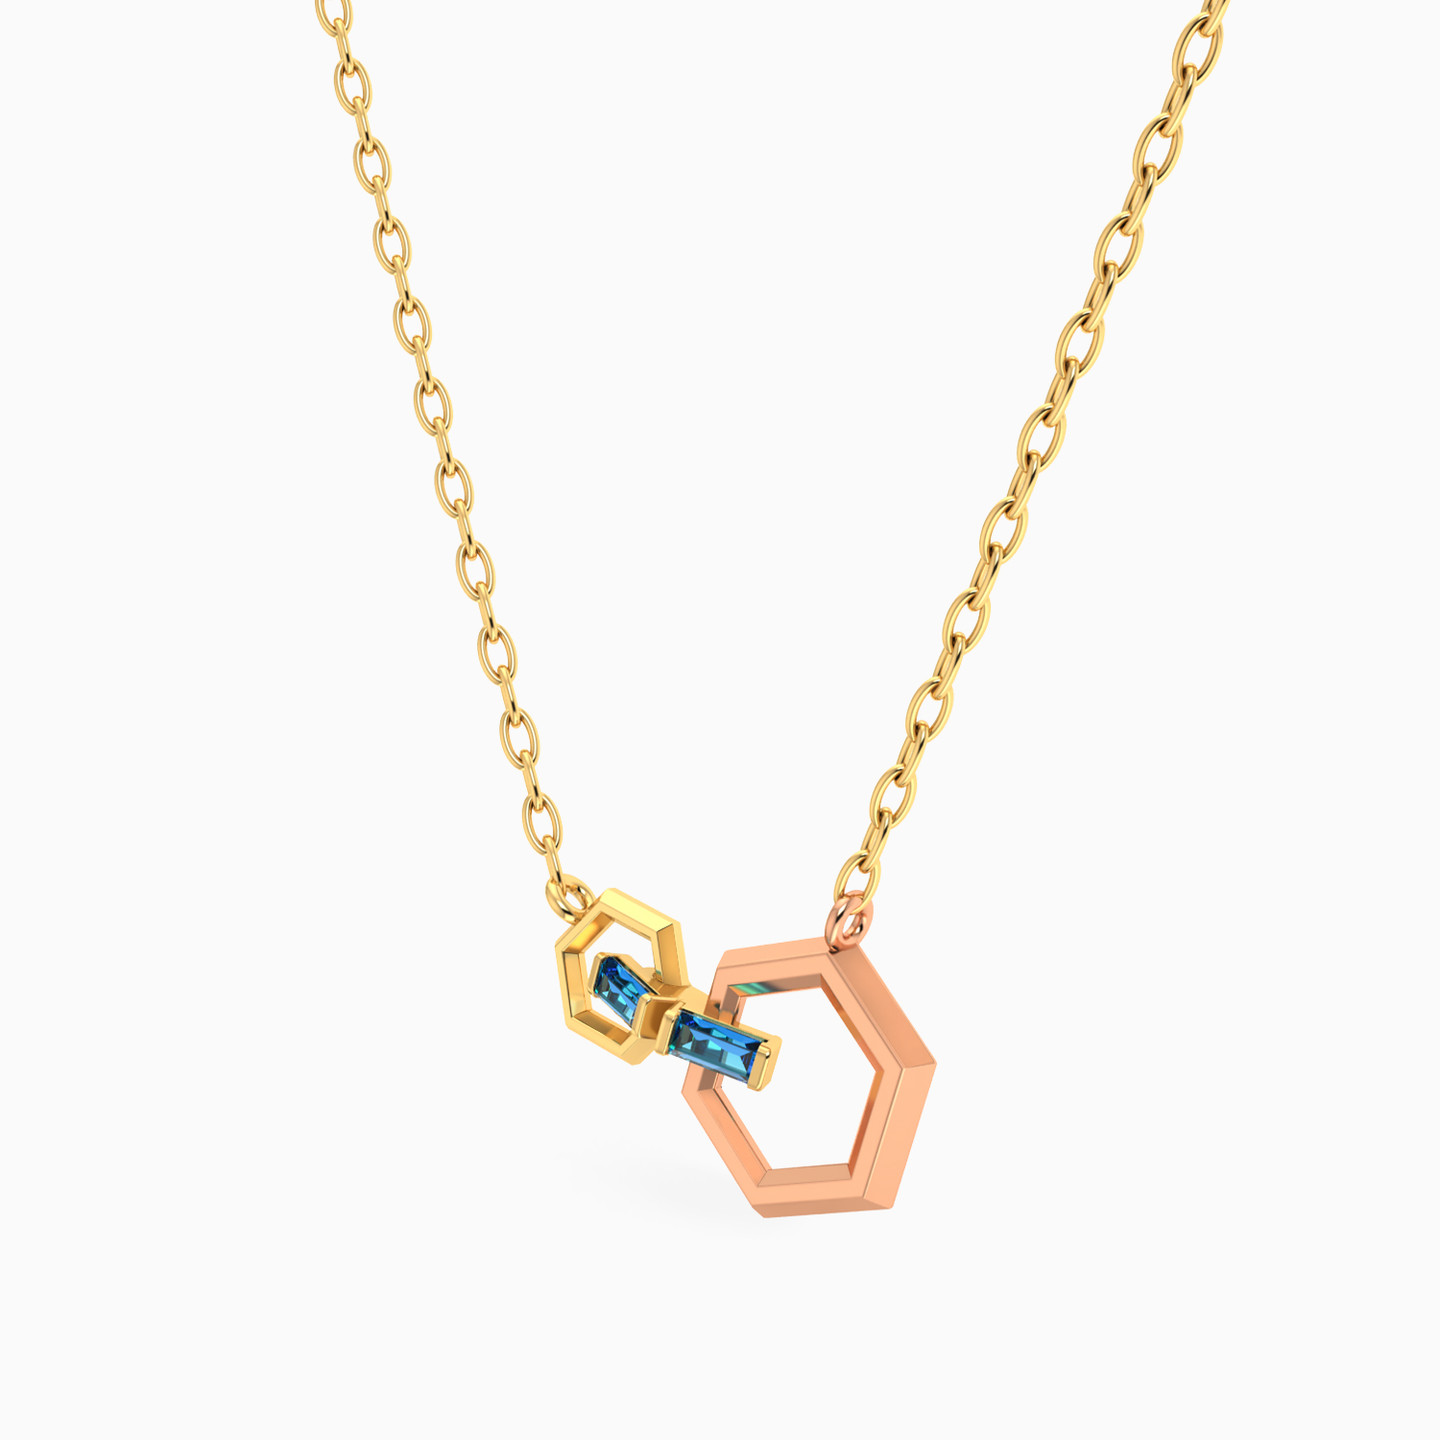 18K Gold Enamel Coated Pendant Necklace - 2